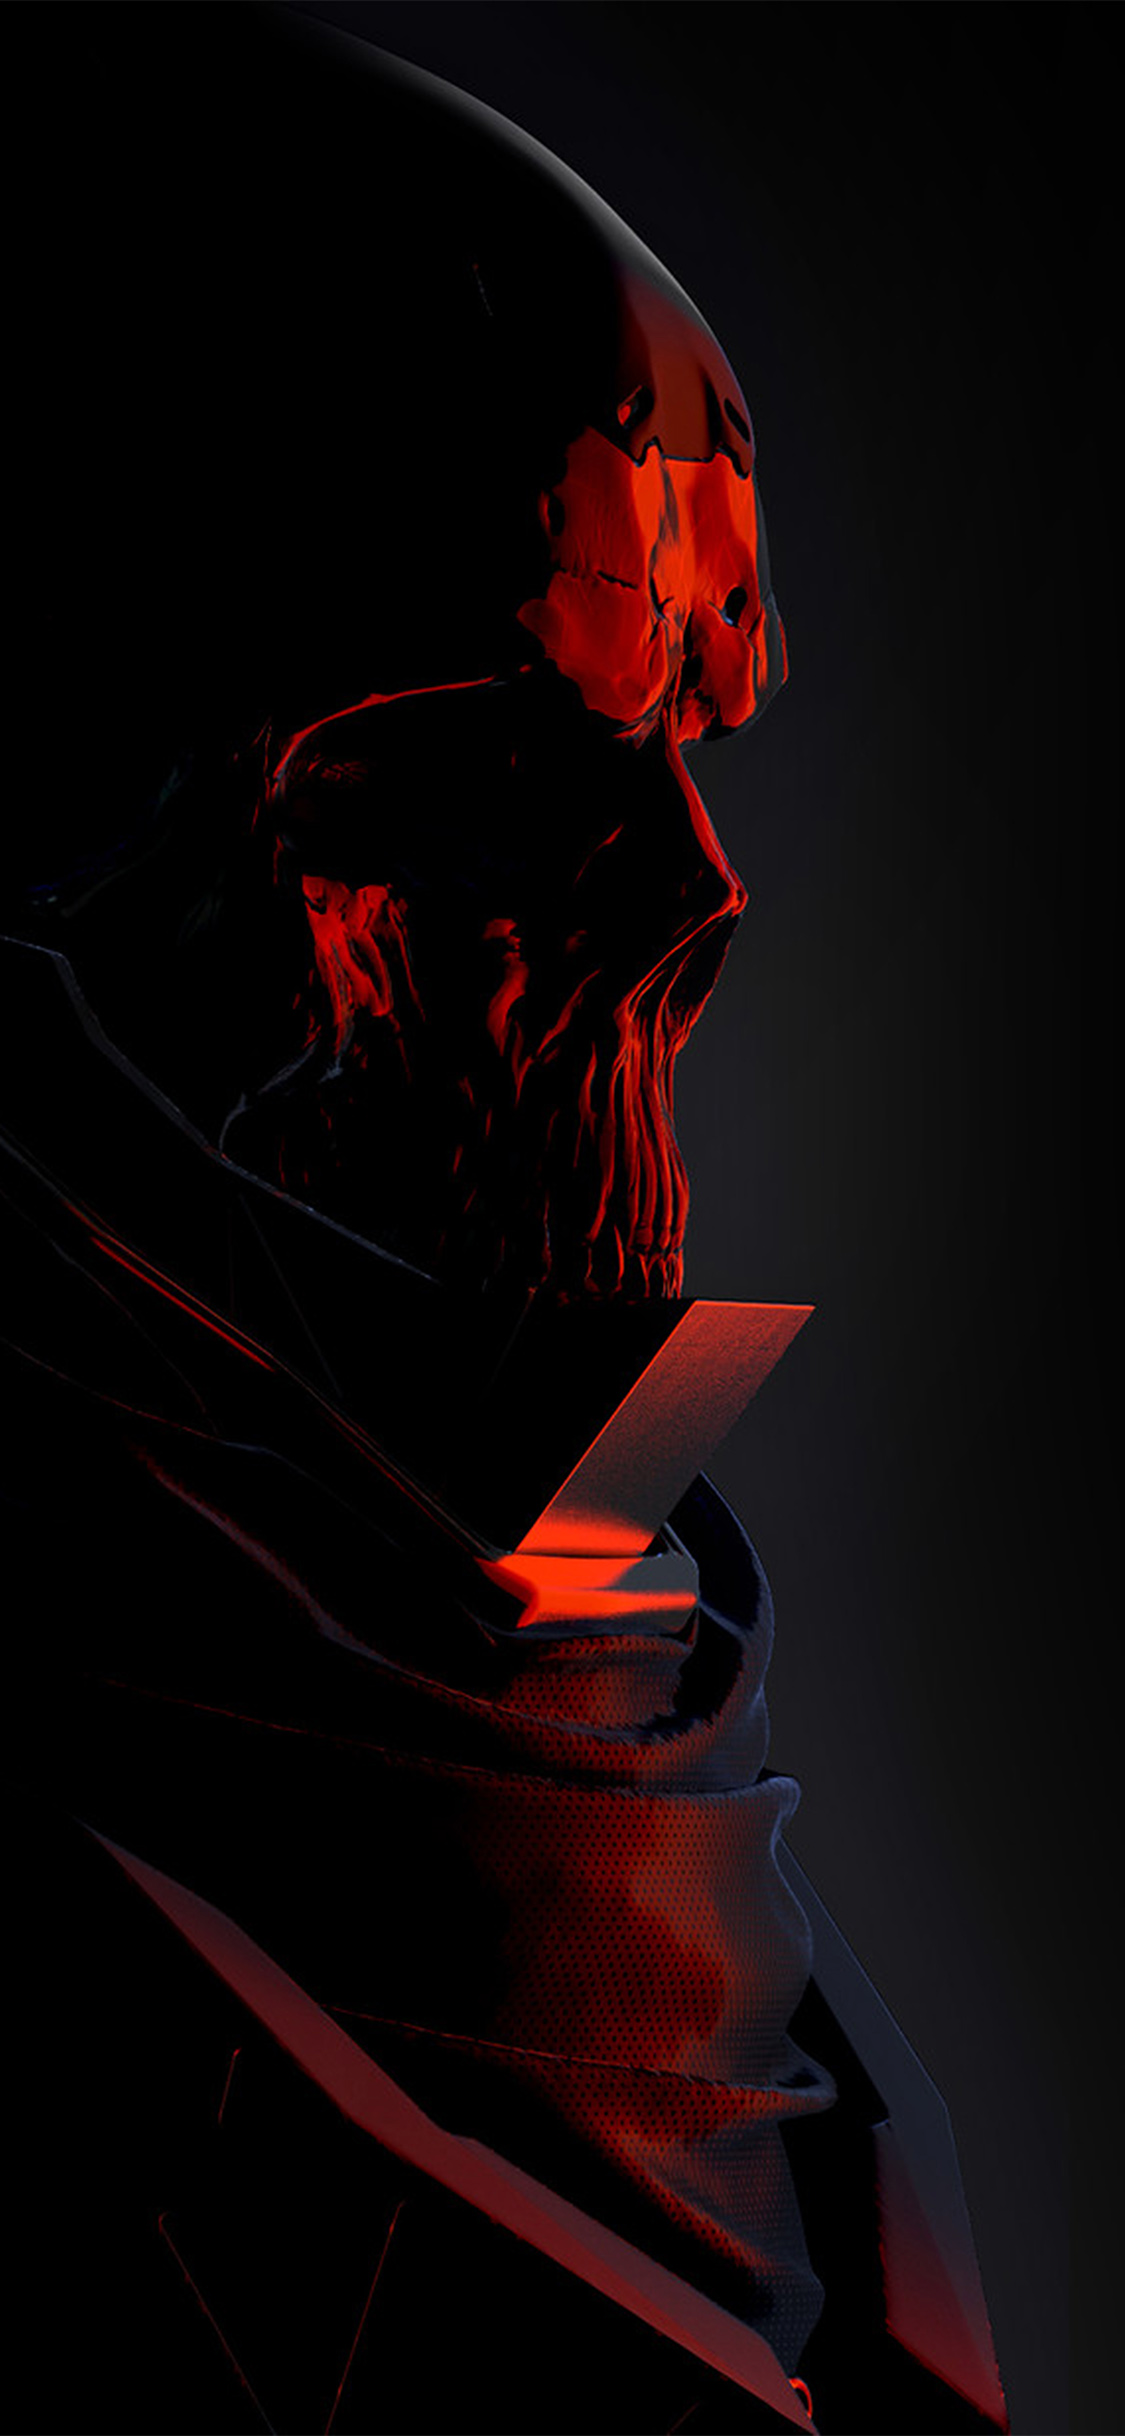 mario stabile weird red dark illustration art skull